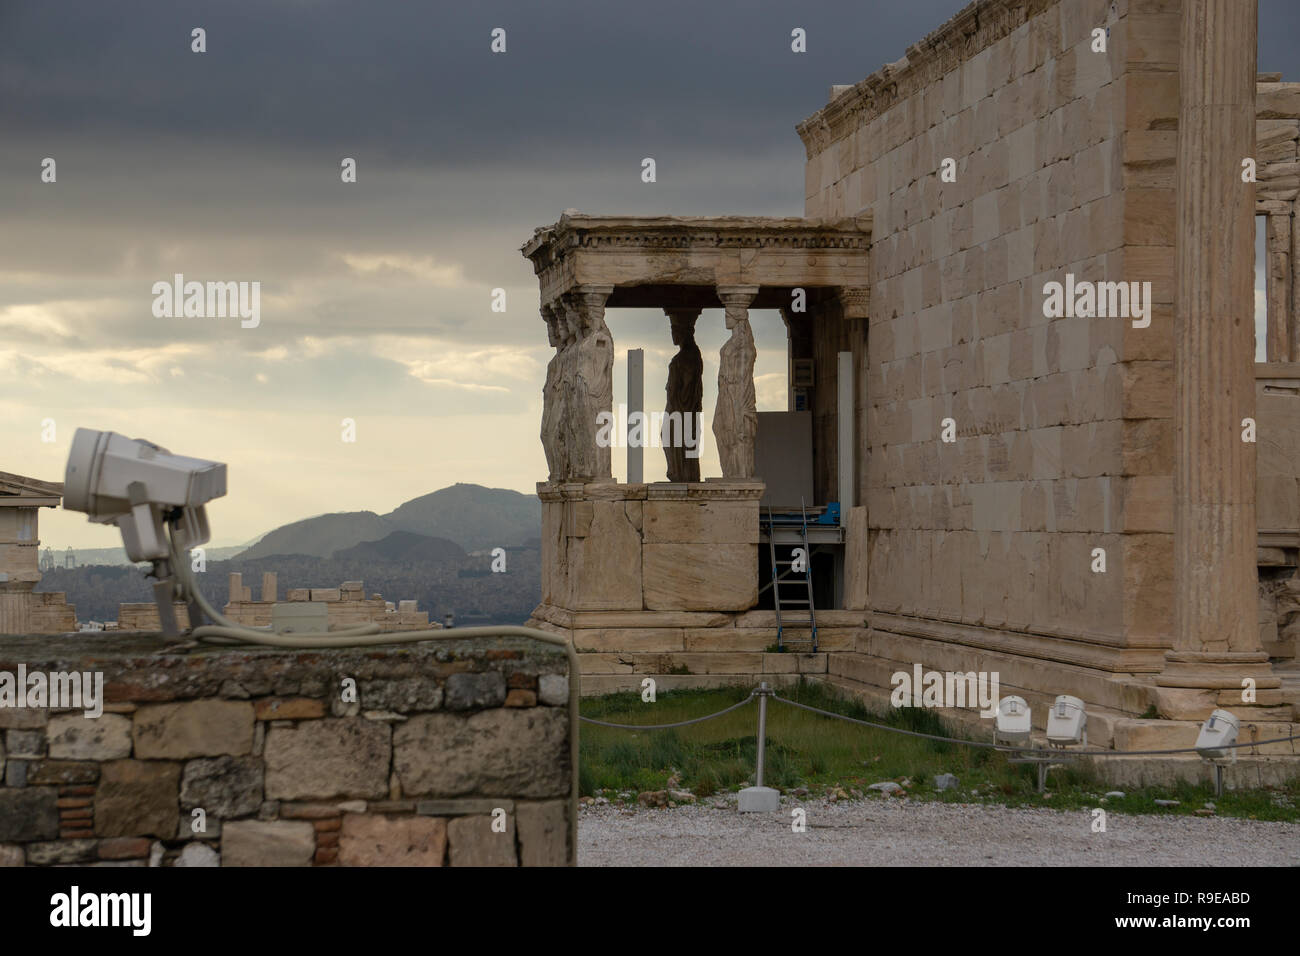 Esta vista del cielo iluminado por la ciudad moderna de Atenas, visto a través de las columnas del antiguo Templo de Atenea Niké era imposible poner en palabras Foto de stock